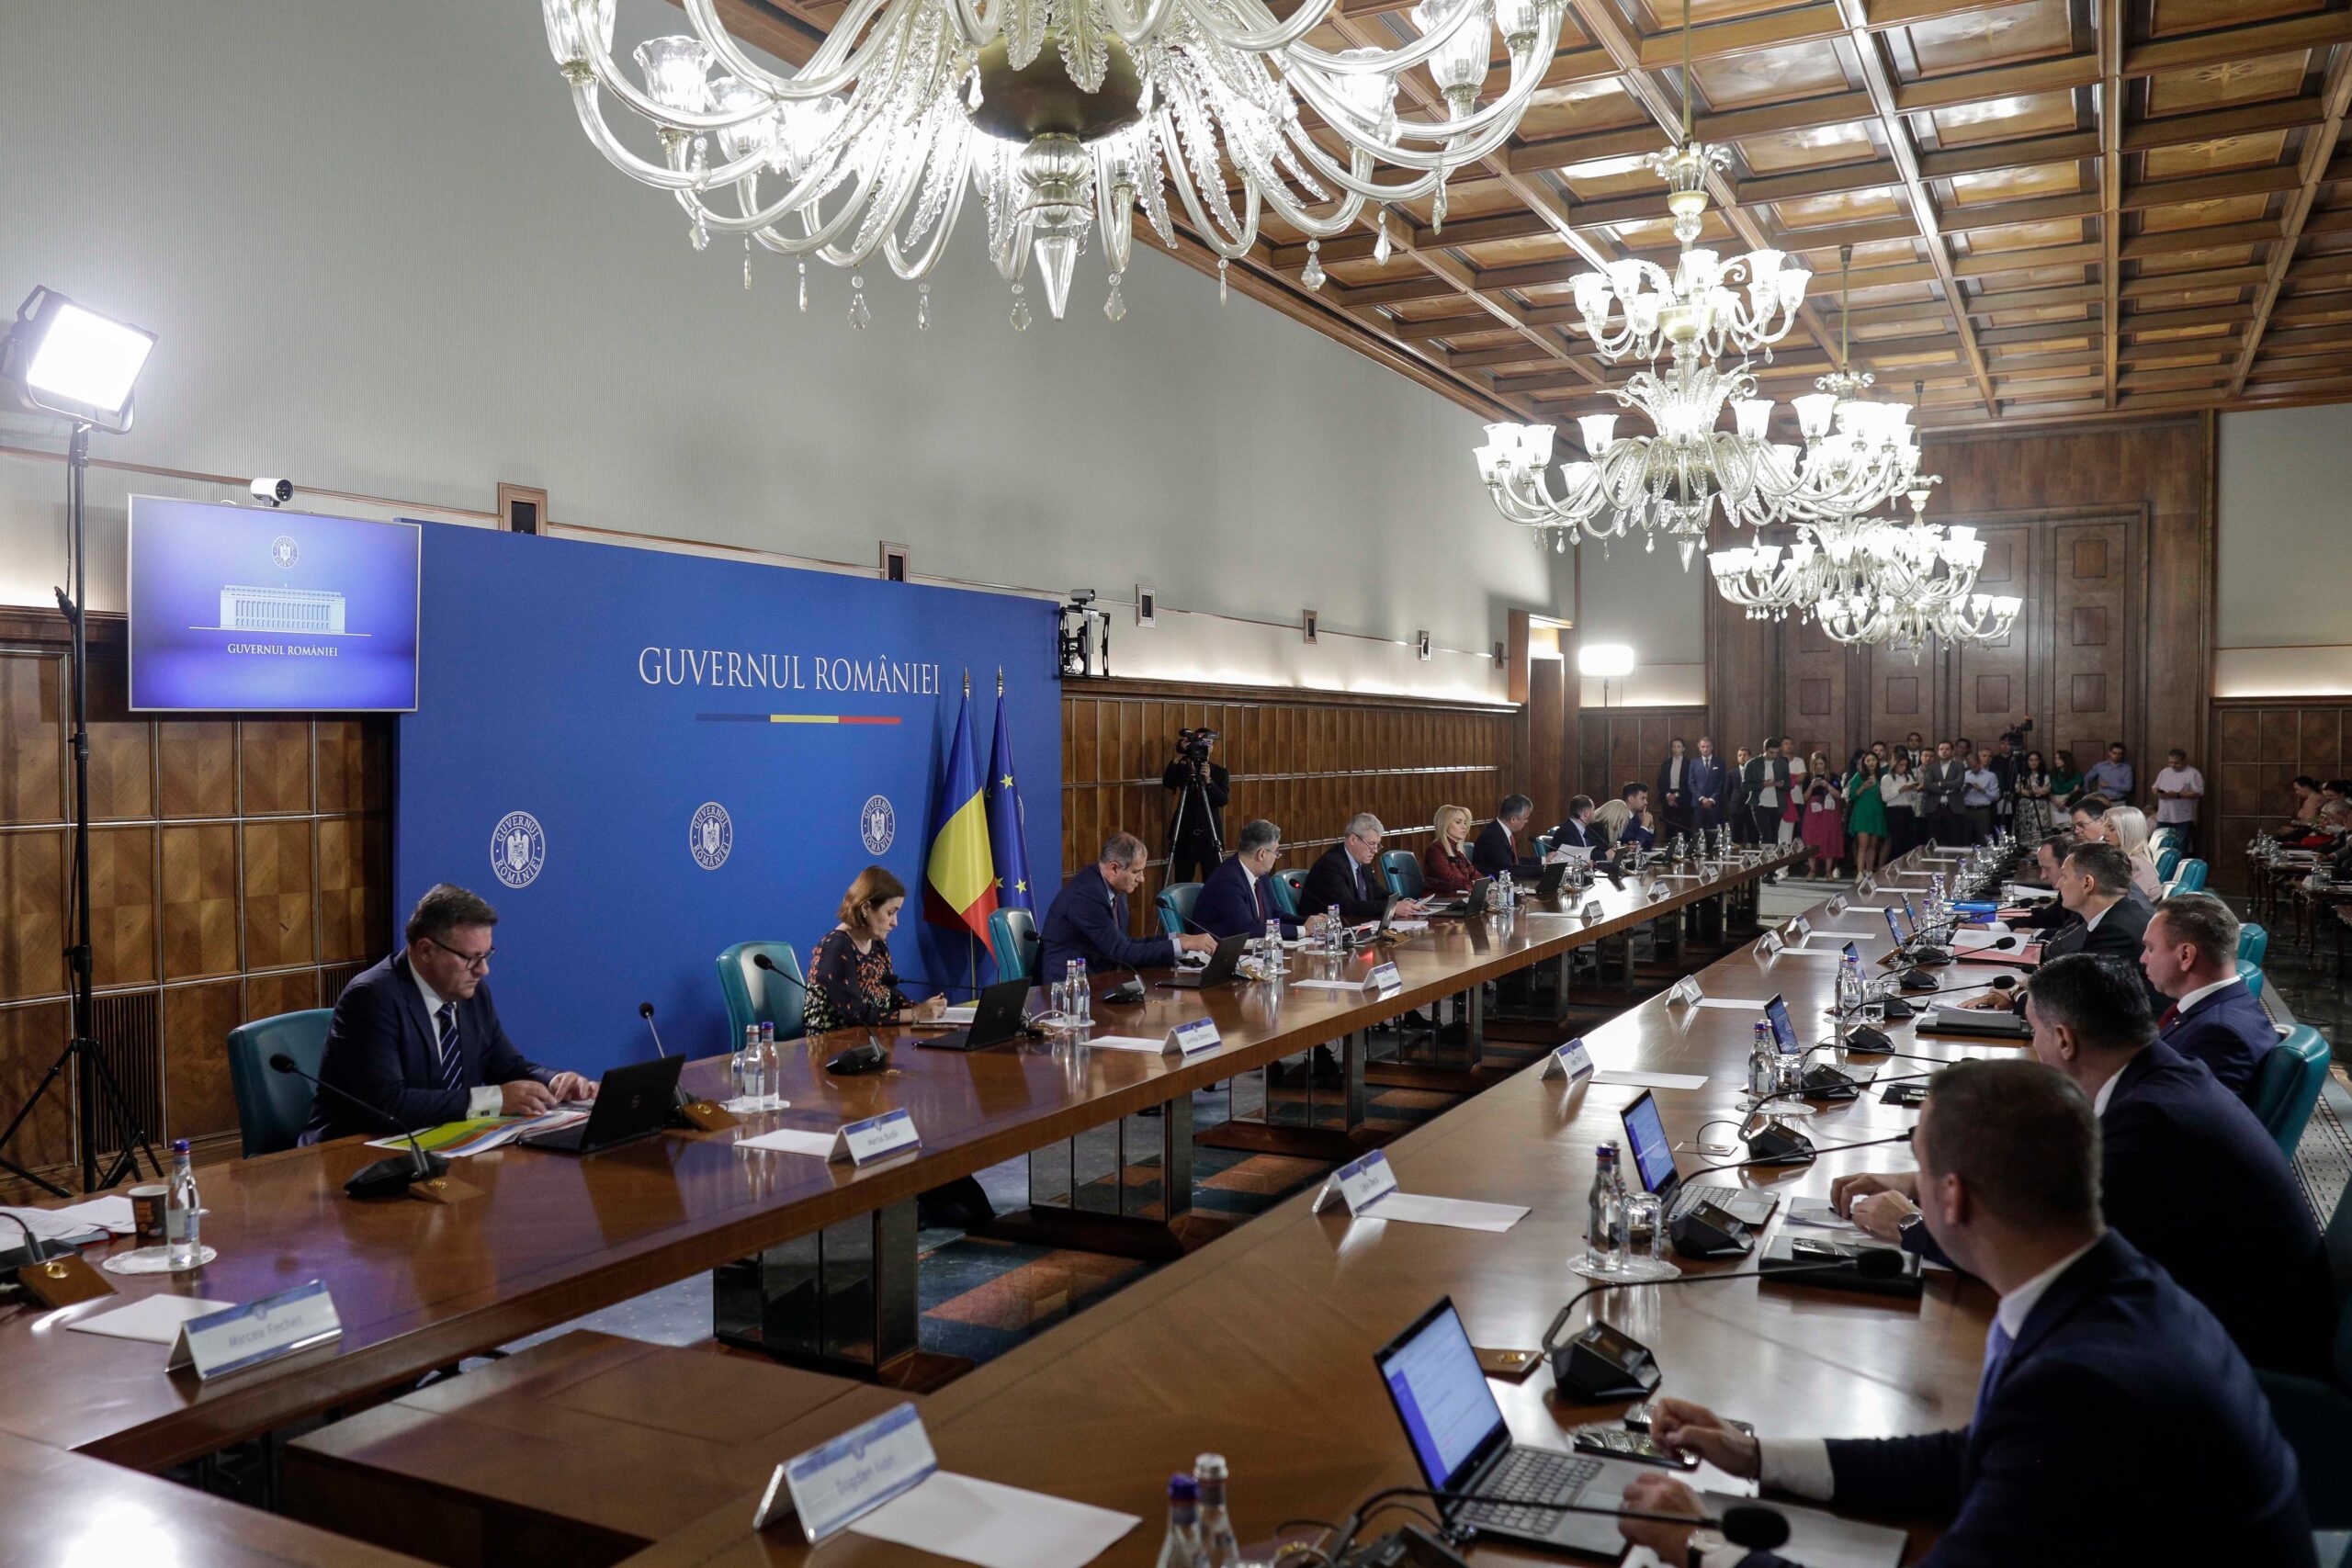  România a depus cererea de modificare a PNRR. Guvernul elimină 4 investiții și modifică 70 de măsuri